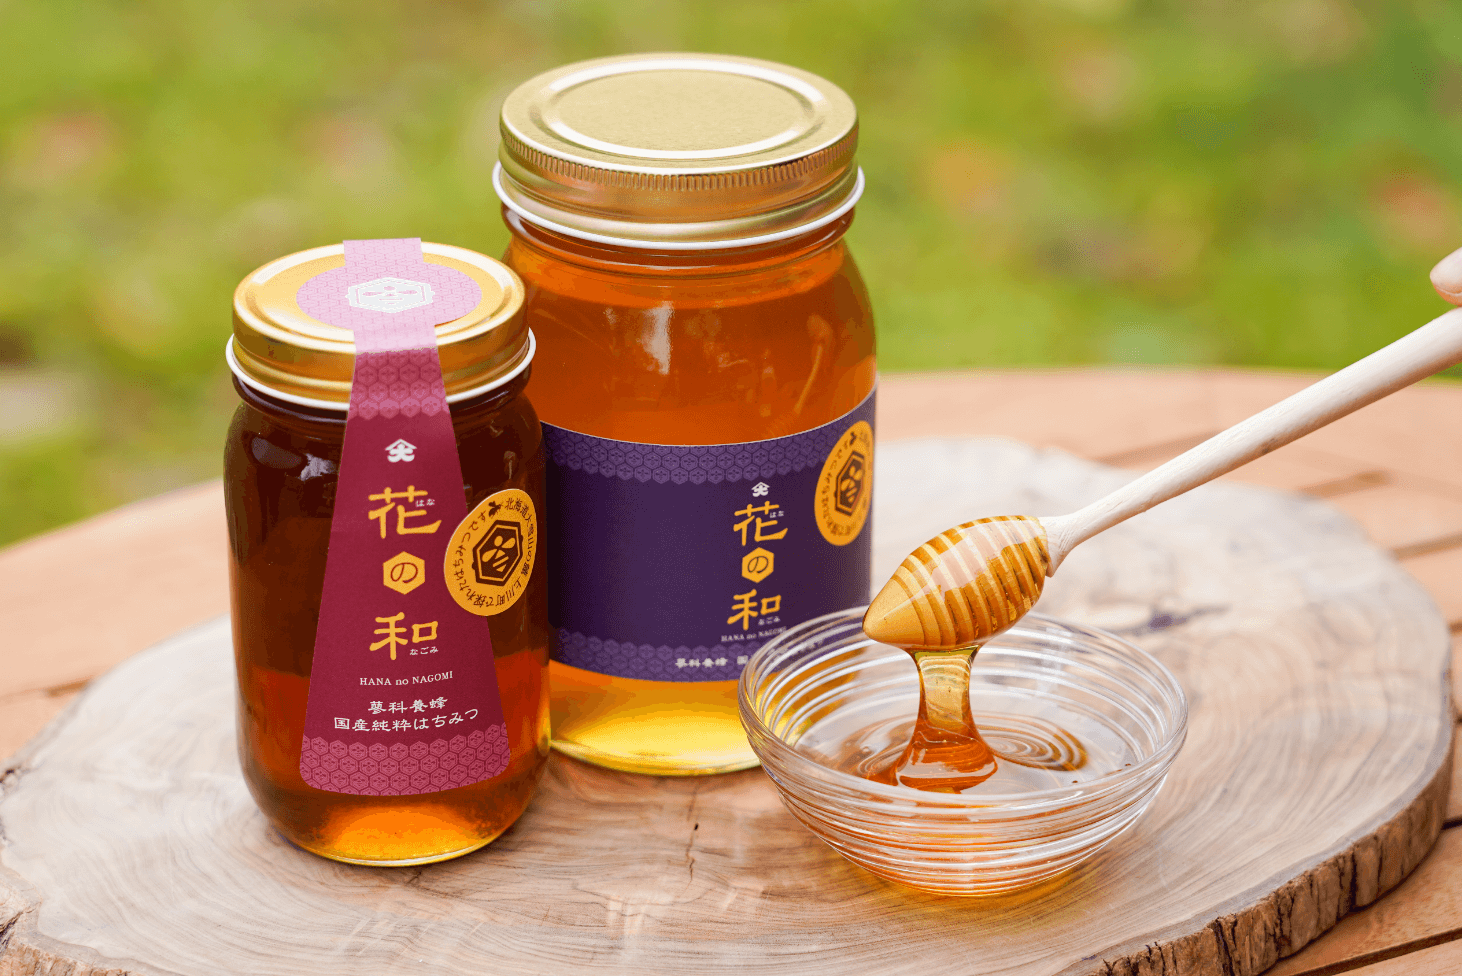 何種類もの蜜が混ざった豊かな風味「百花」と、ハーブの香りで清涼感な後味の「シナ」。